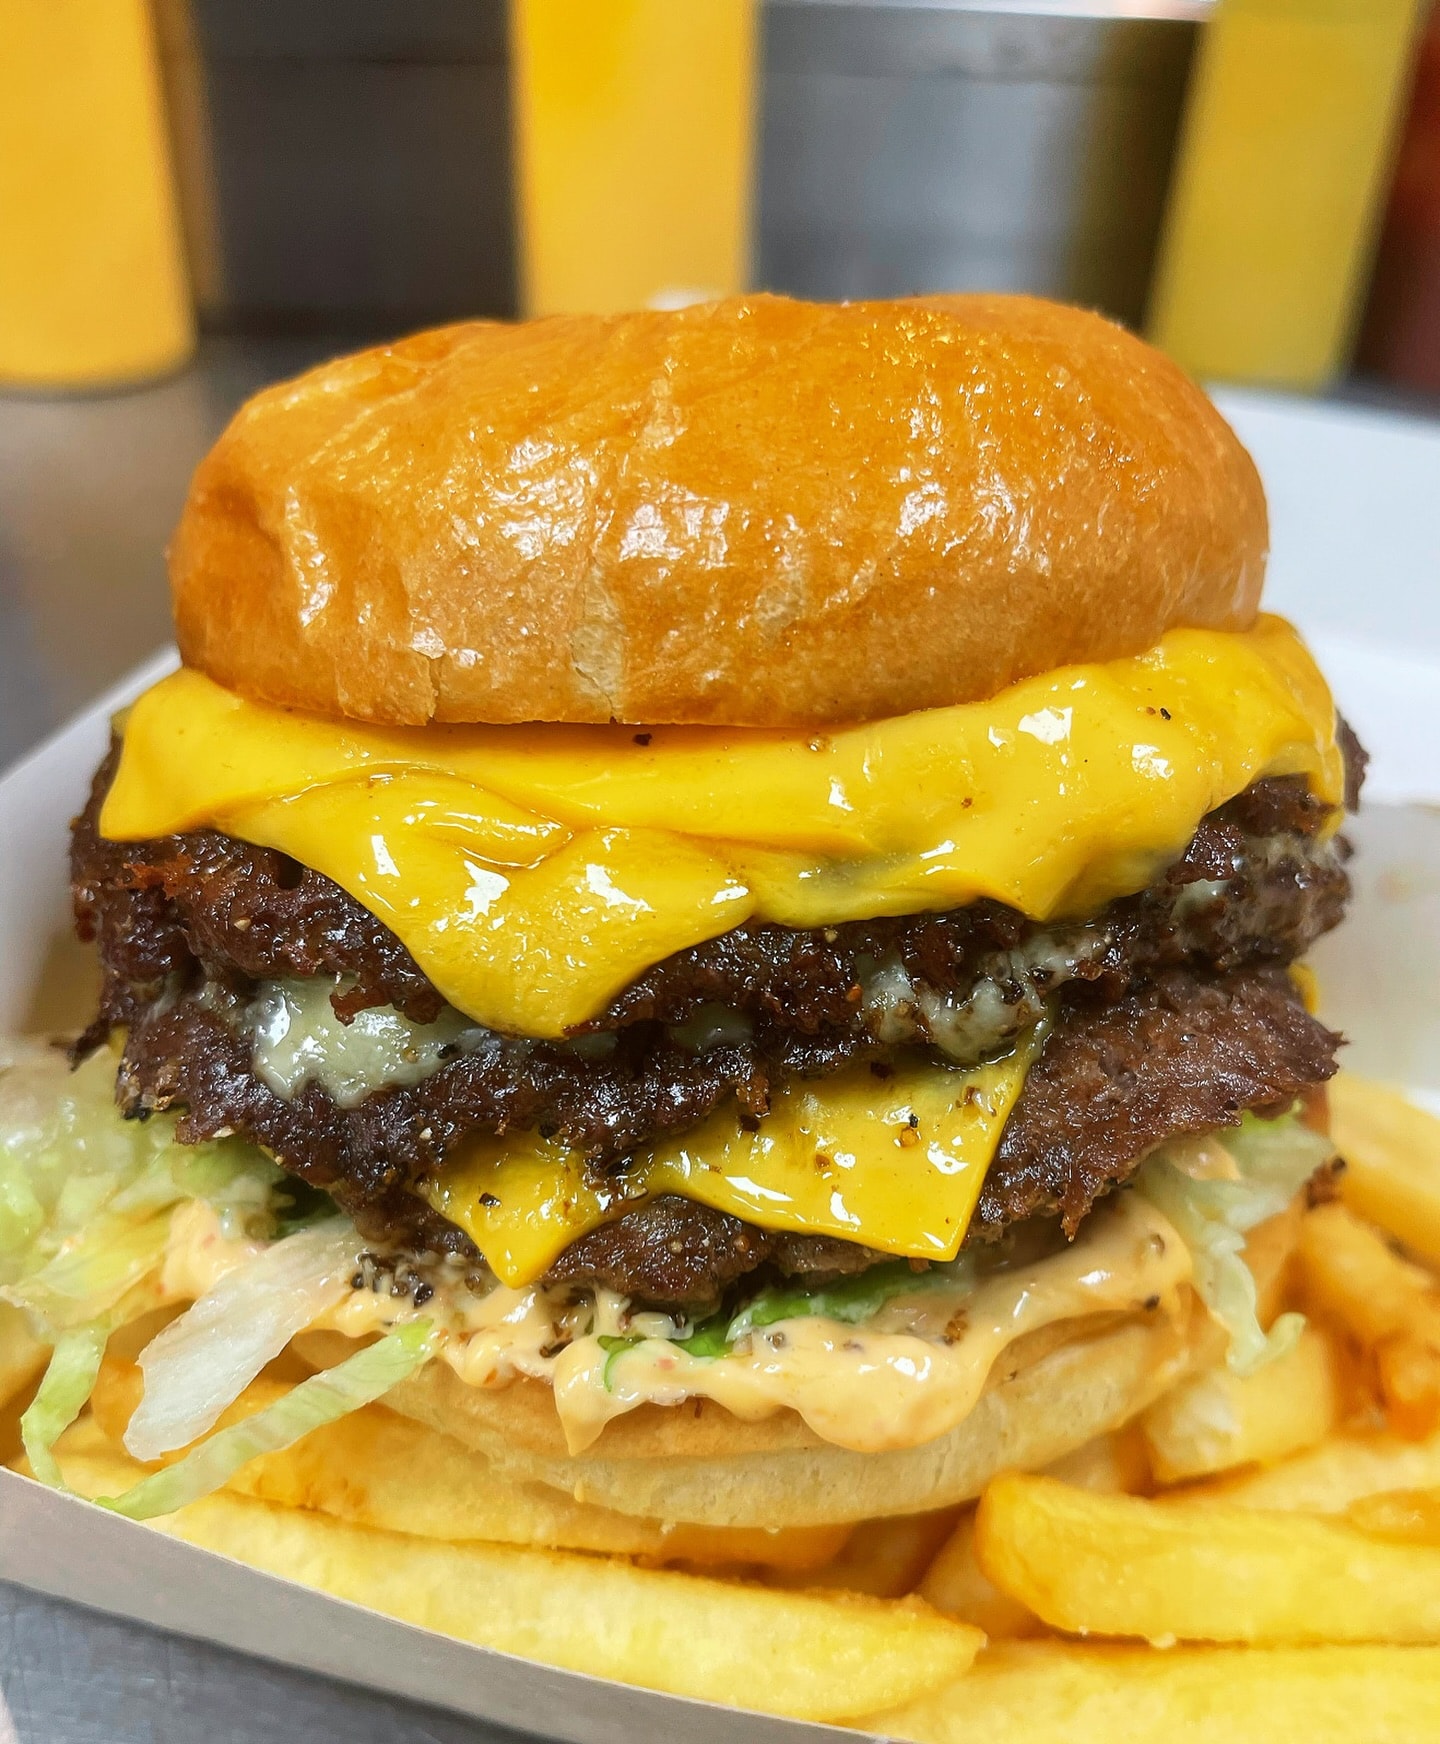 Valfri 200 g smashed burger inkl. pommes och dryck hos Burger Mansion (7 av 8)